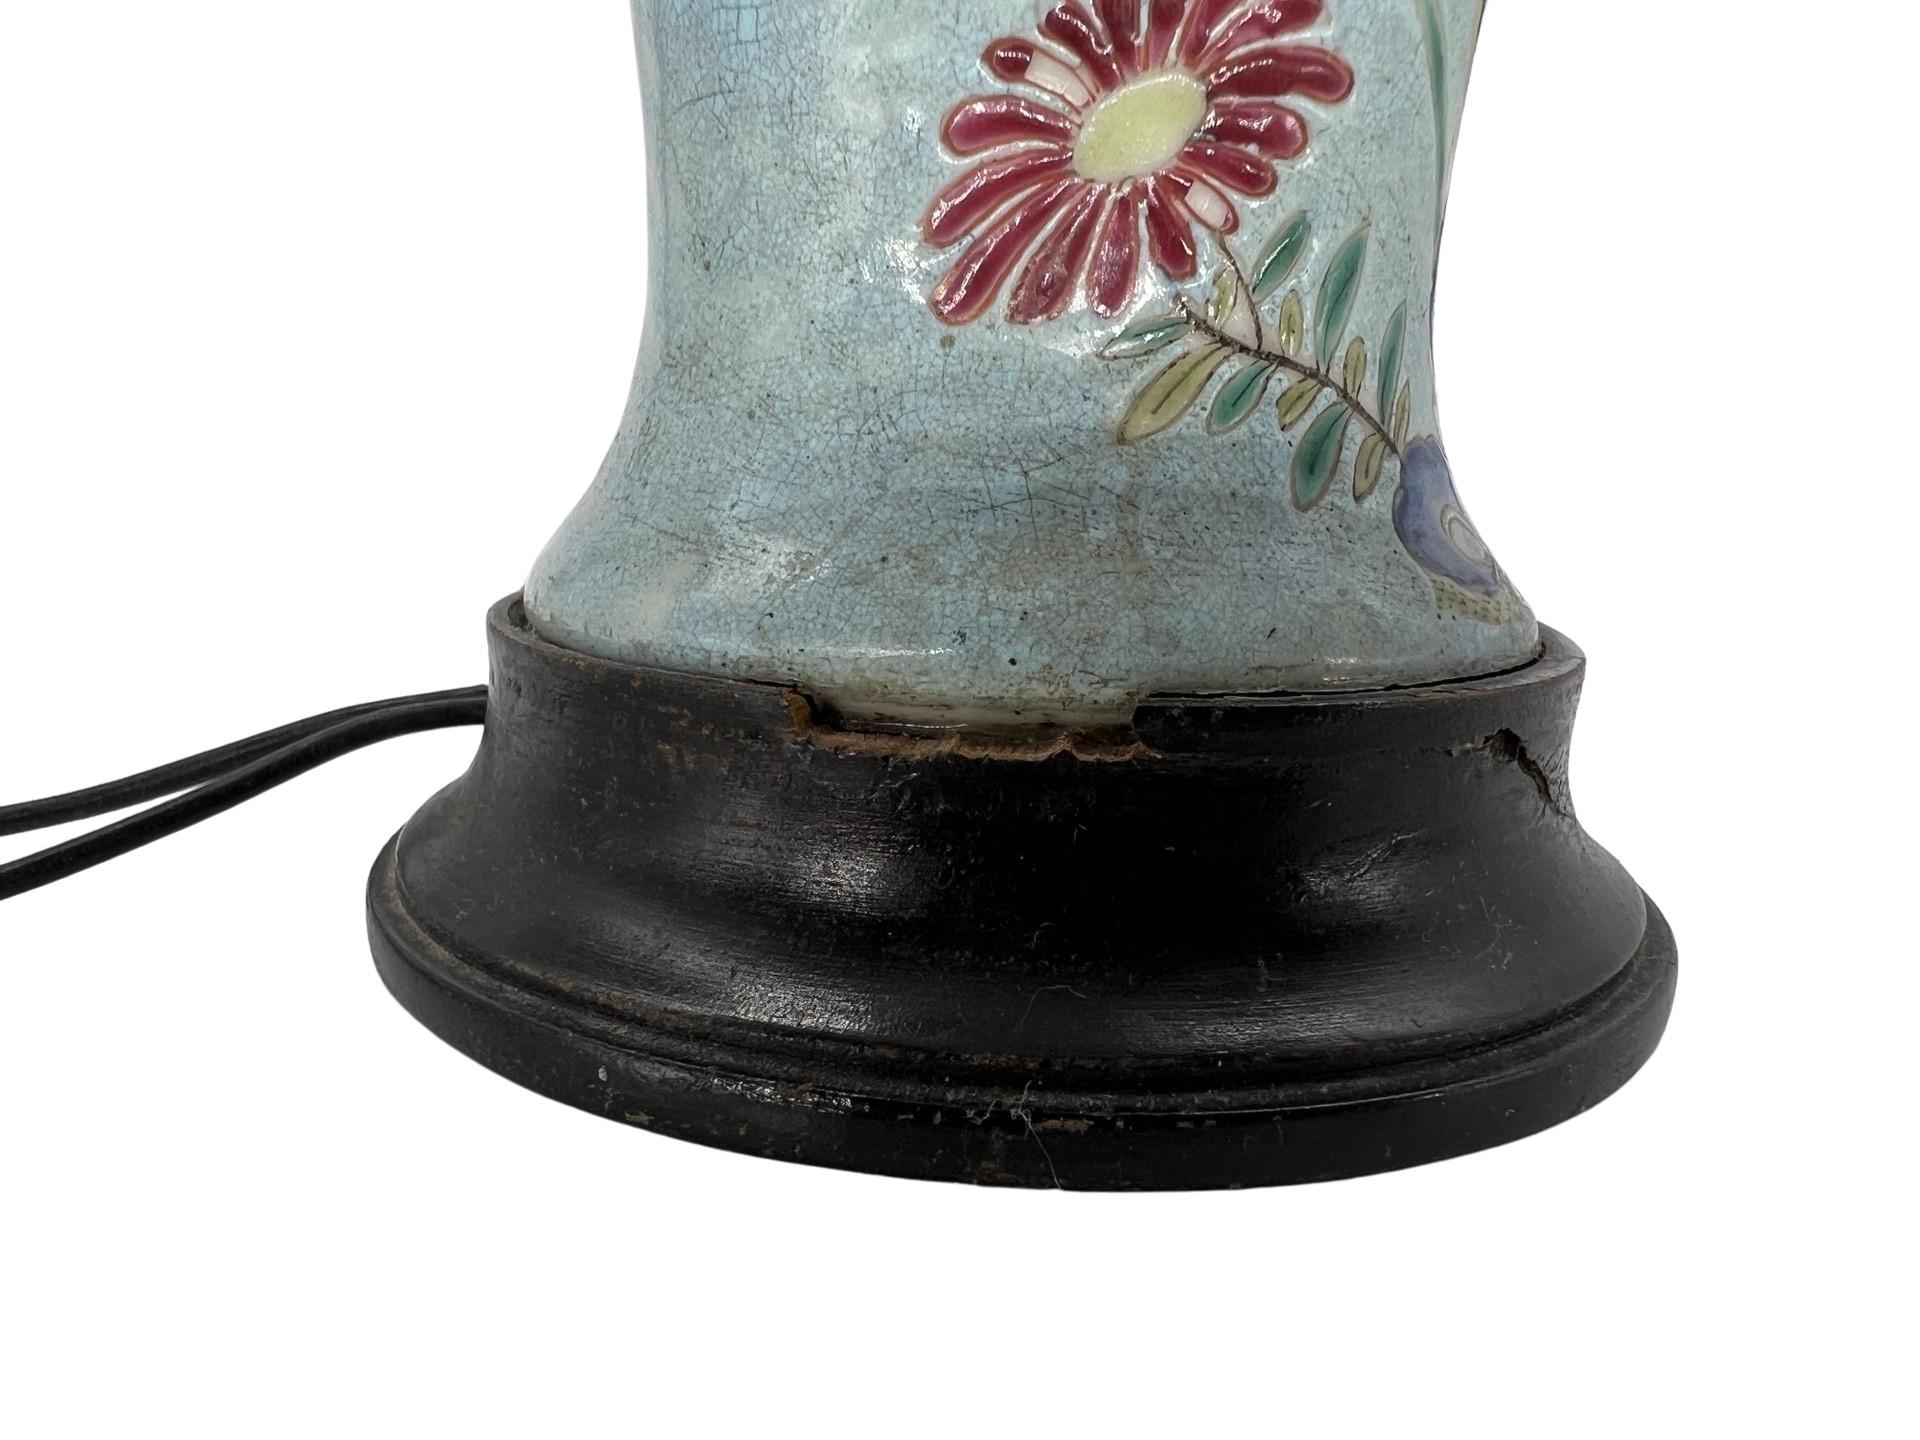 Chinesisch, 19. Jahrhundert. 
Eine Vase aus Peranakan-Porzellan oder Nyonya-Ware, verziert mit Blumen und einem fliegenden Vogel. 
Ungefähr: 17,5